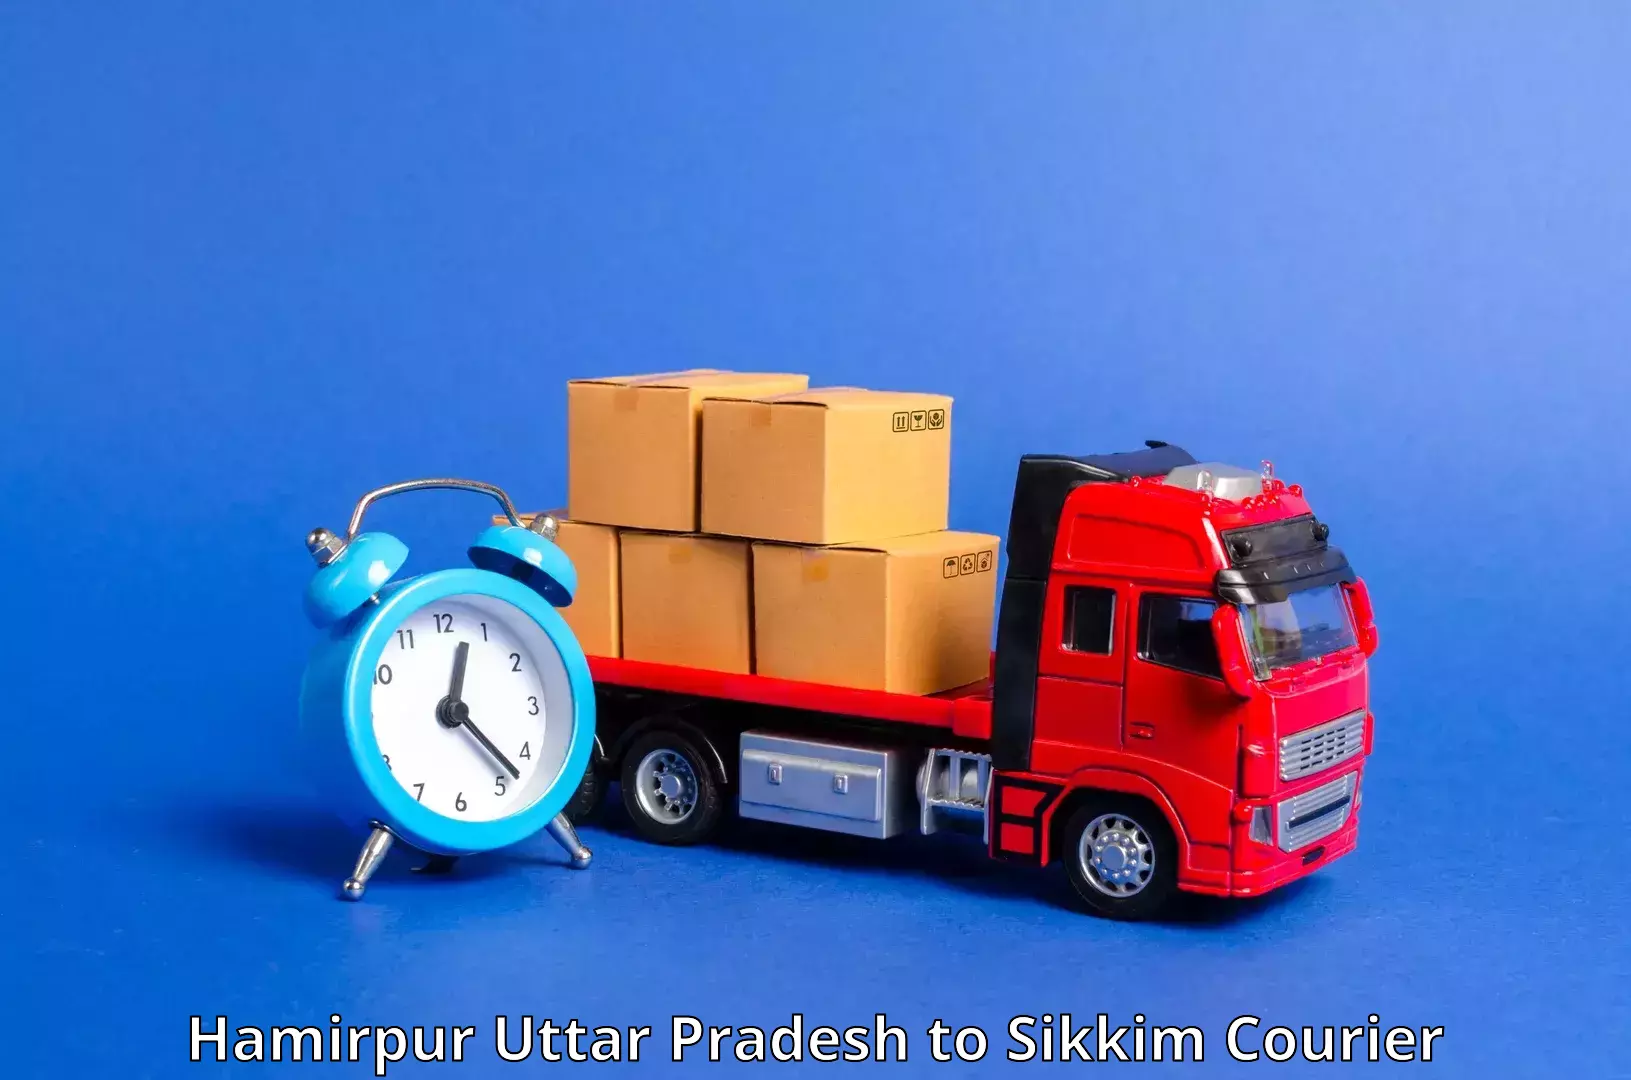 Regular parcel service Hamirpur Uttar Pradesh to Pelling